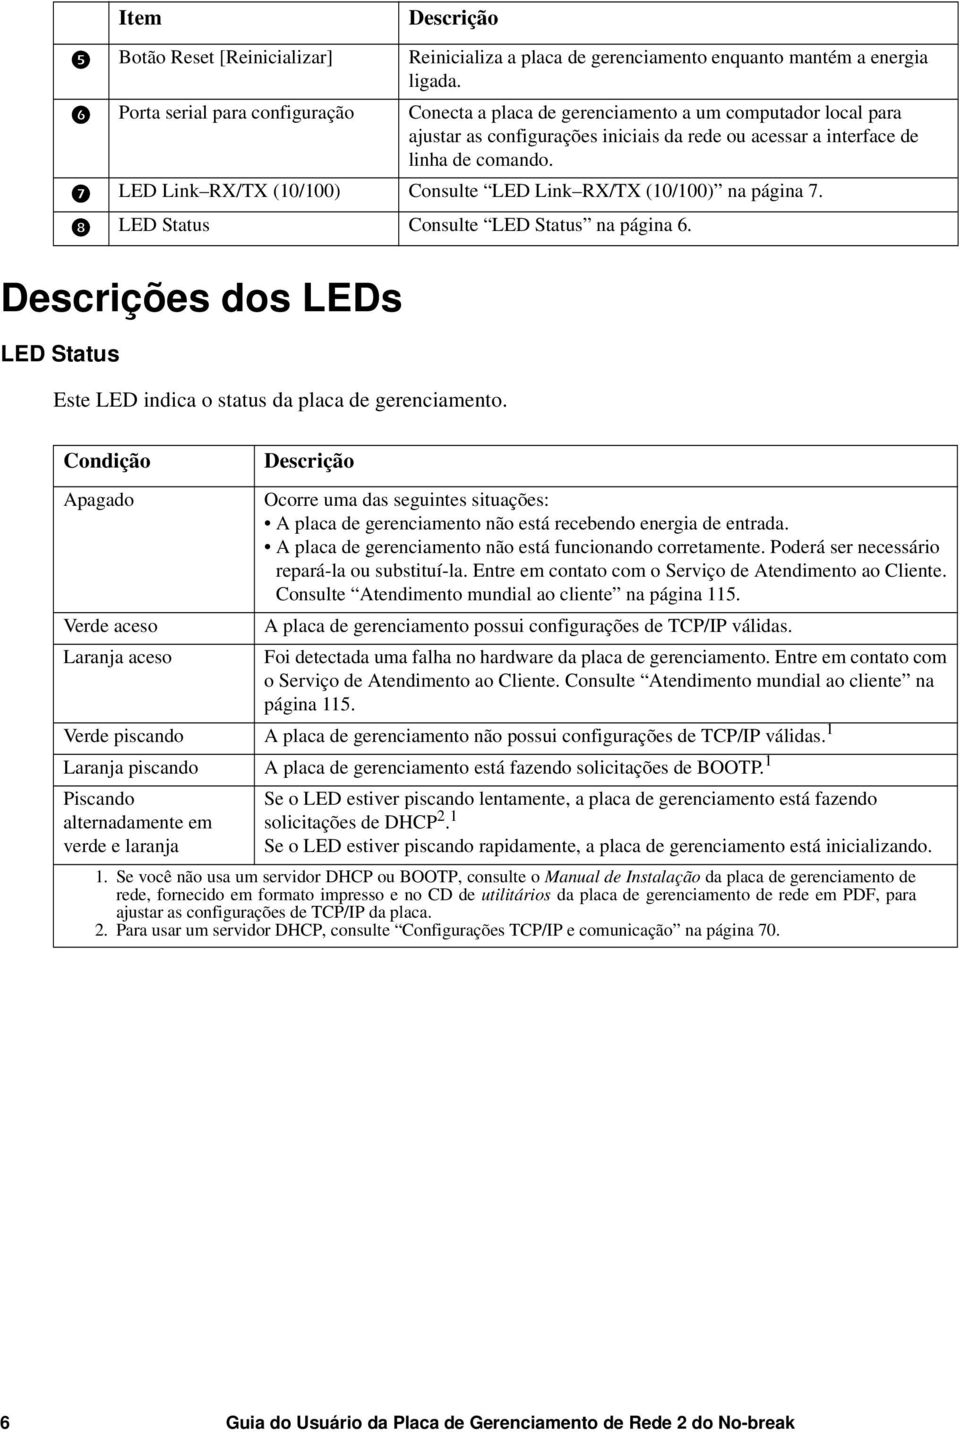 LED Link RX/TX (10/100) Consulte LED Link RX/TX (10/100) na página 7. LED Status Consulte LED Status na página 6. Descrições dos LEDs LED Status Este LED indica o status da placa de gerenciamento.